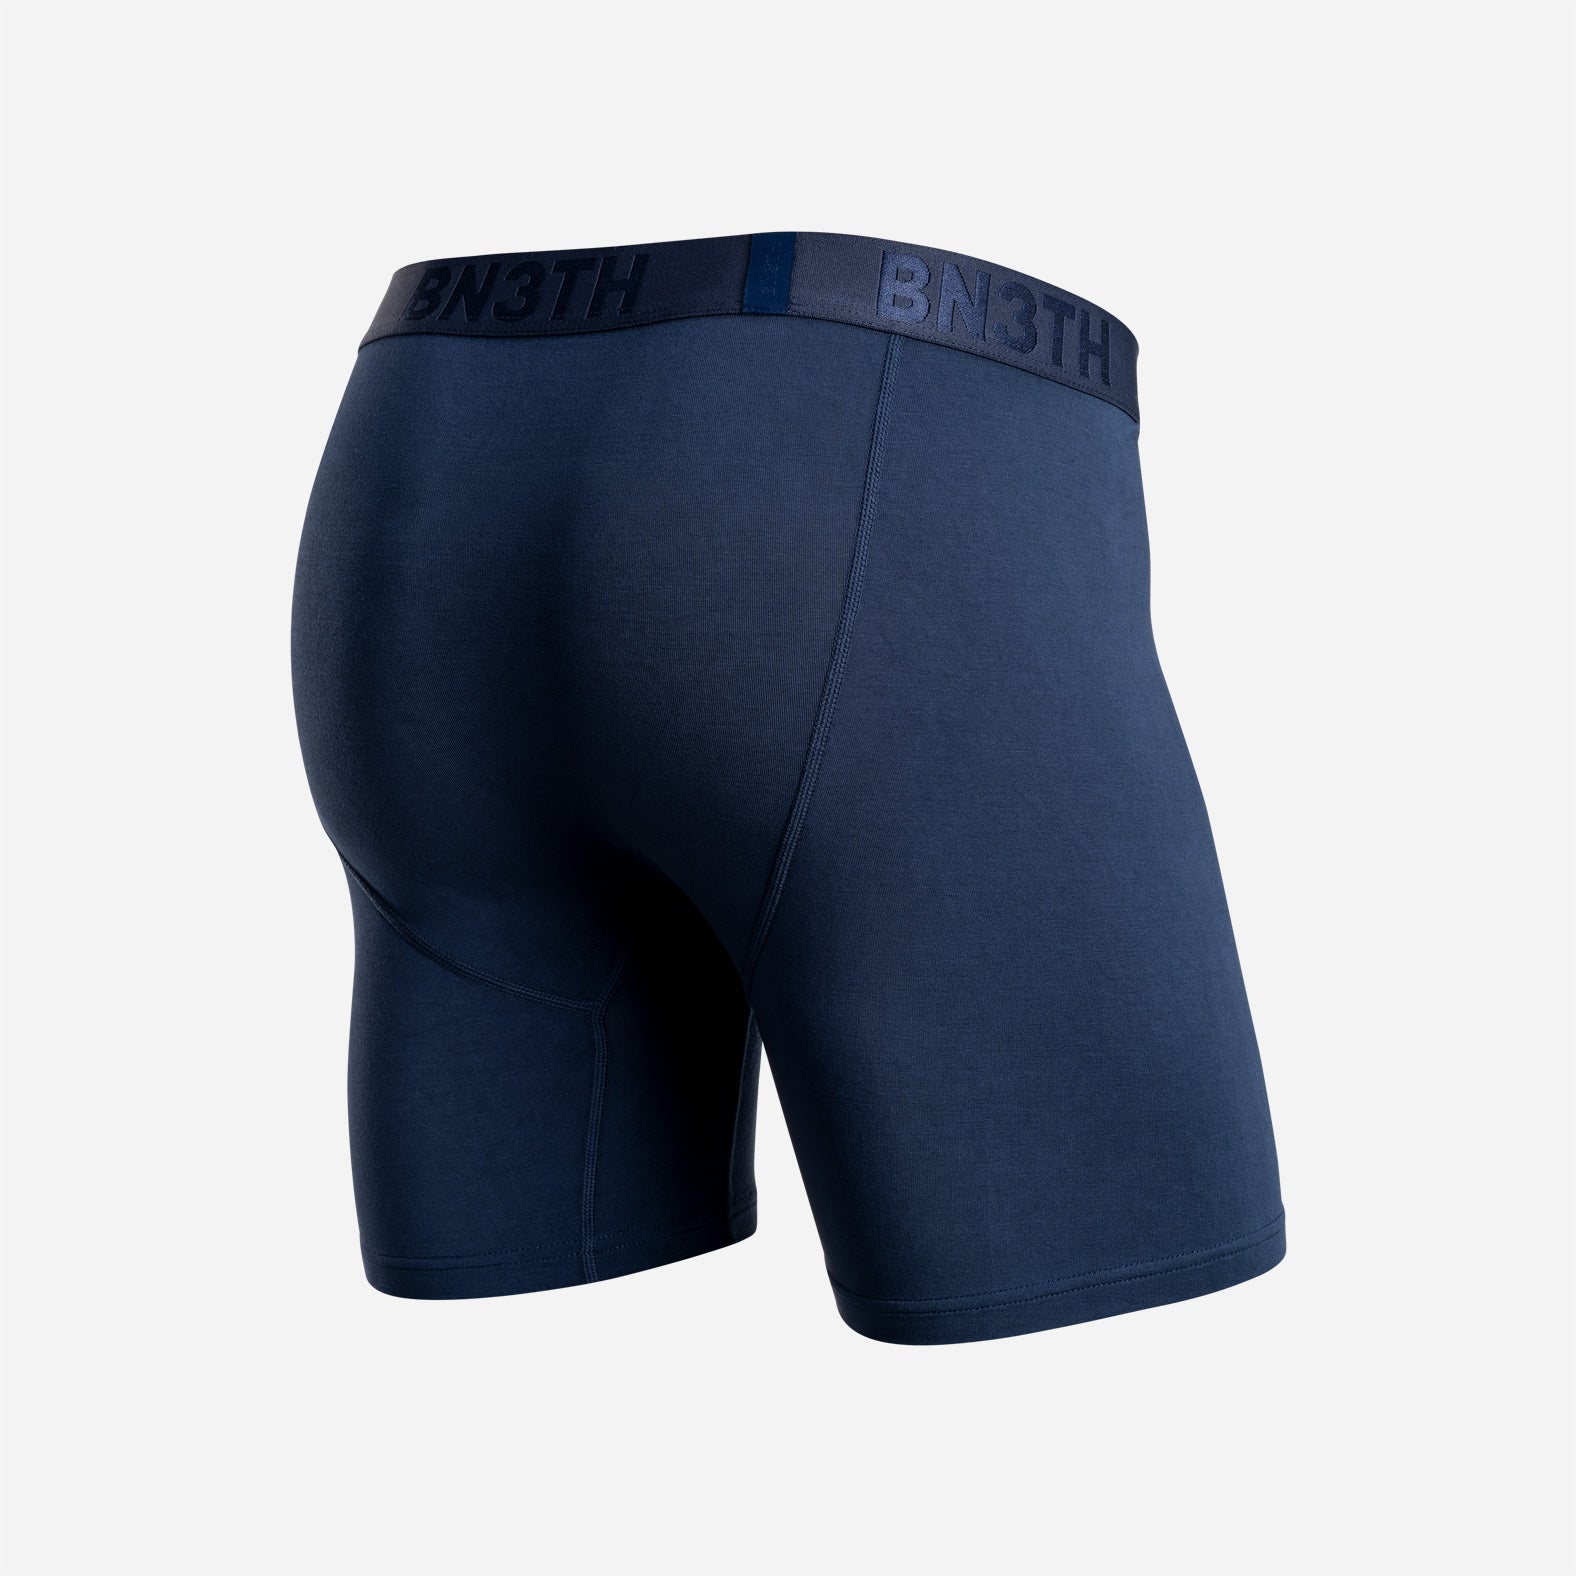 Underwear Navy Classic – Boxer | BN3TH Brief: